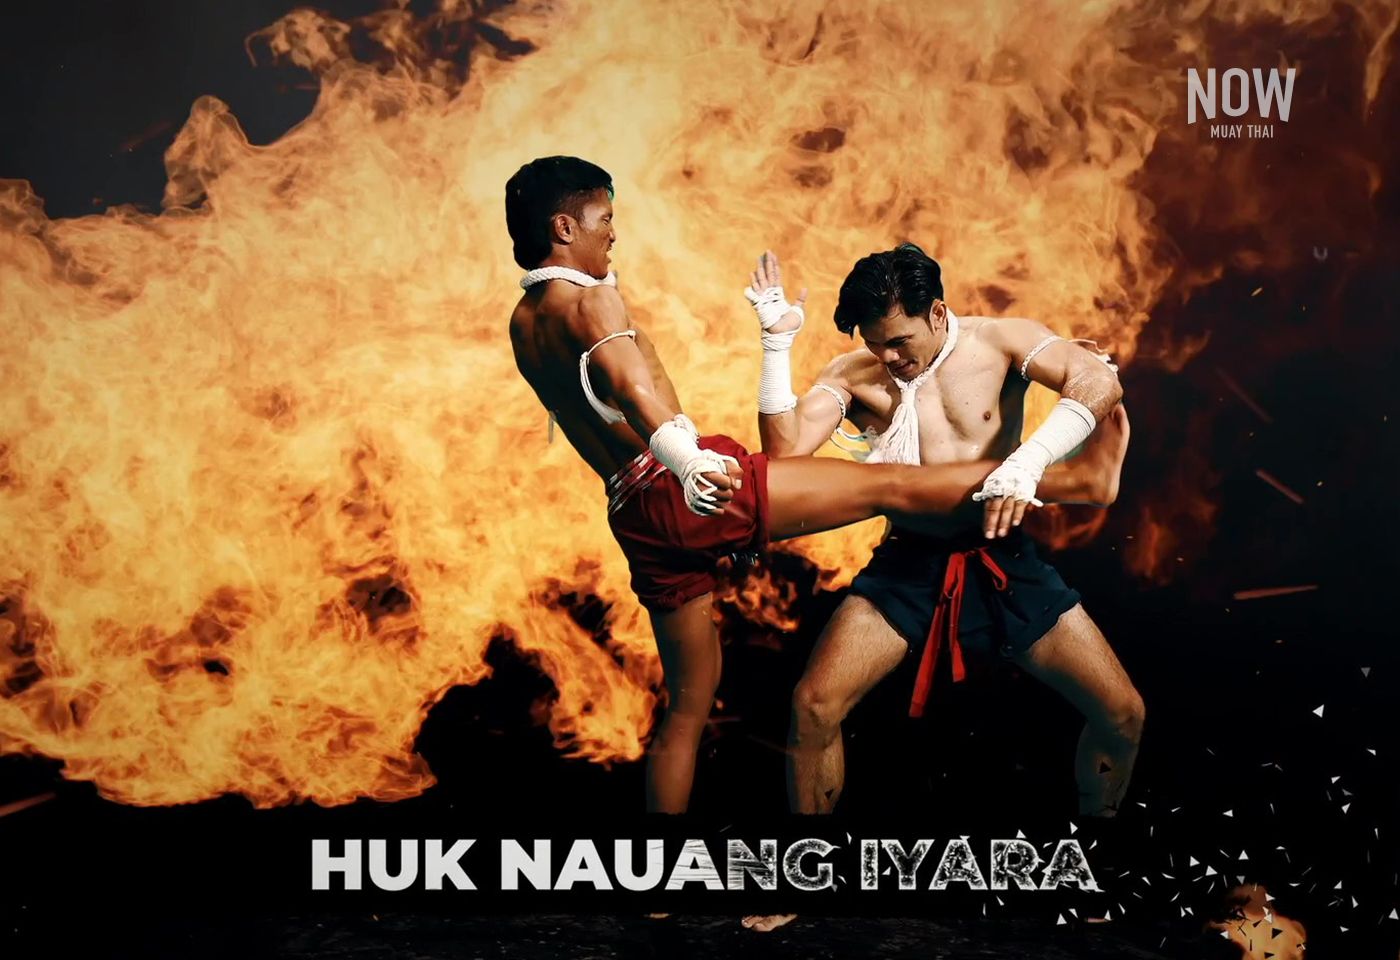 10 Muay Thai techniques: Huk Nguang Iyara